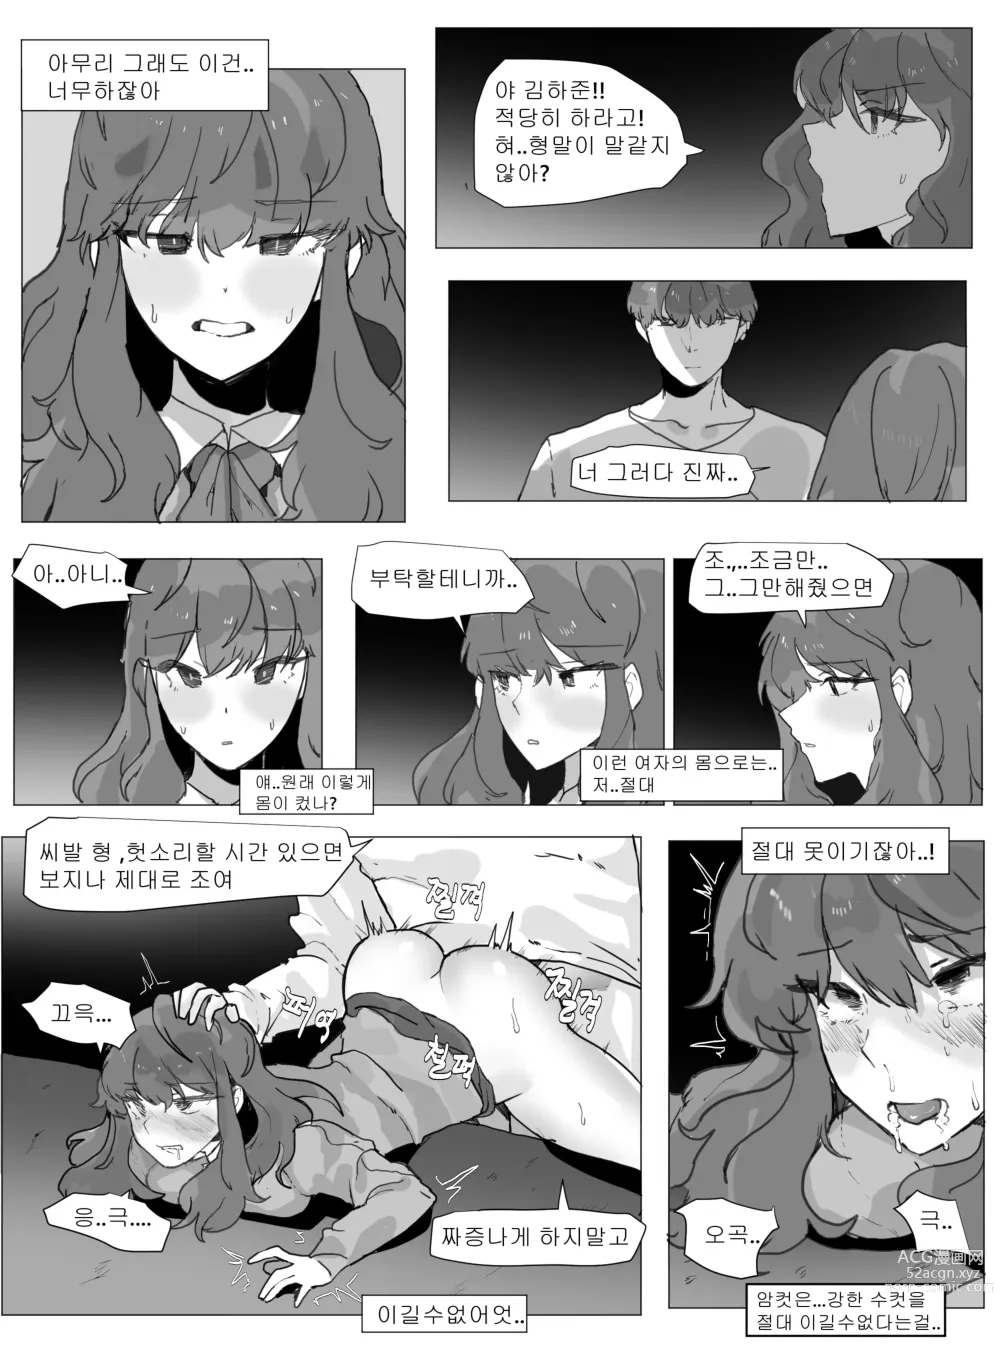 Page 21 of doujinshi 어느날 나는 TS 되었다 -1